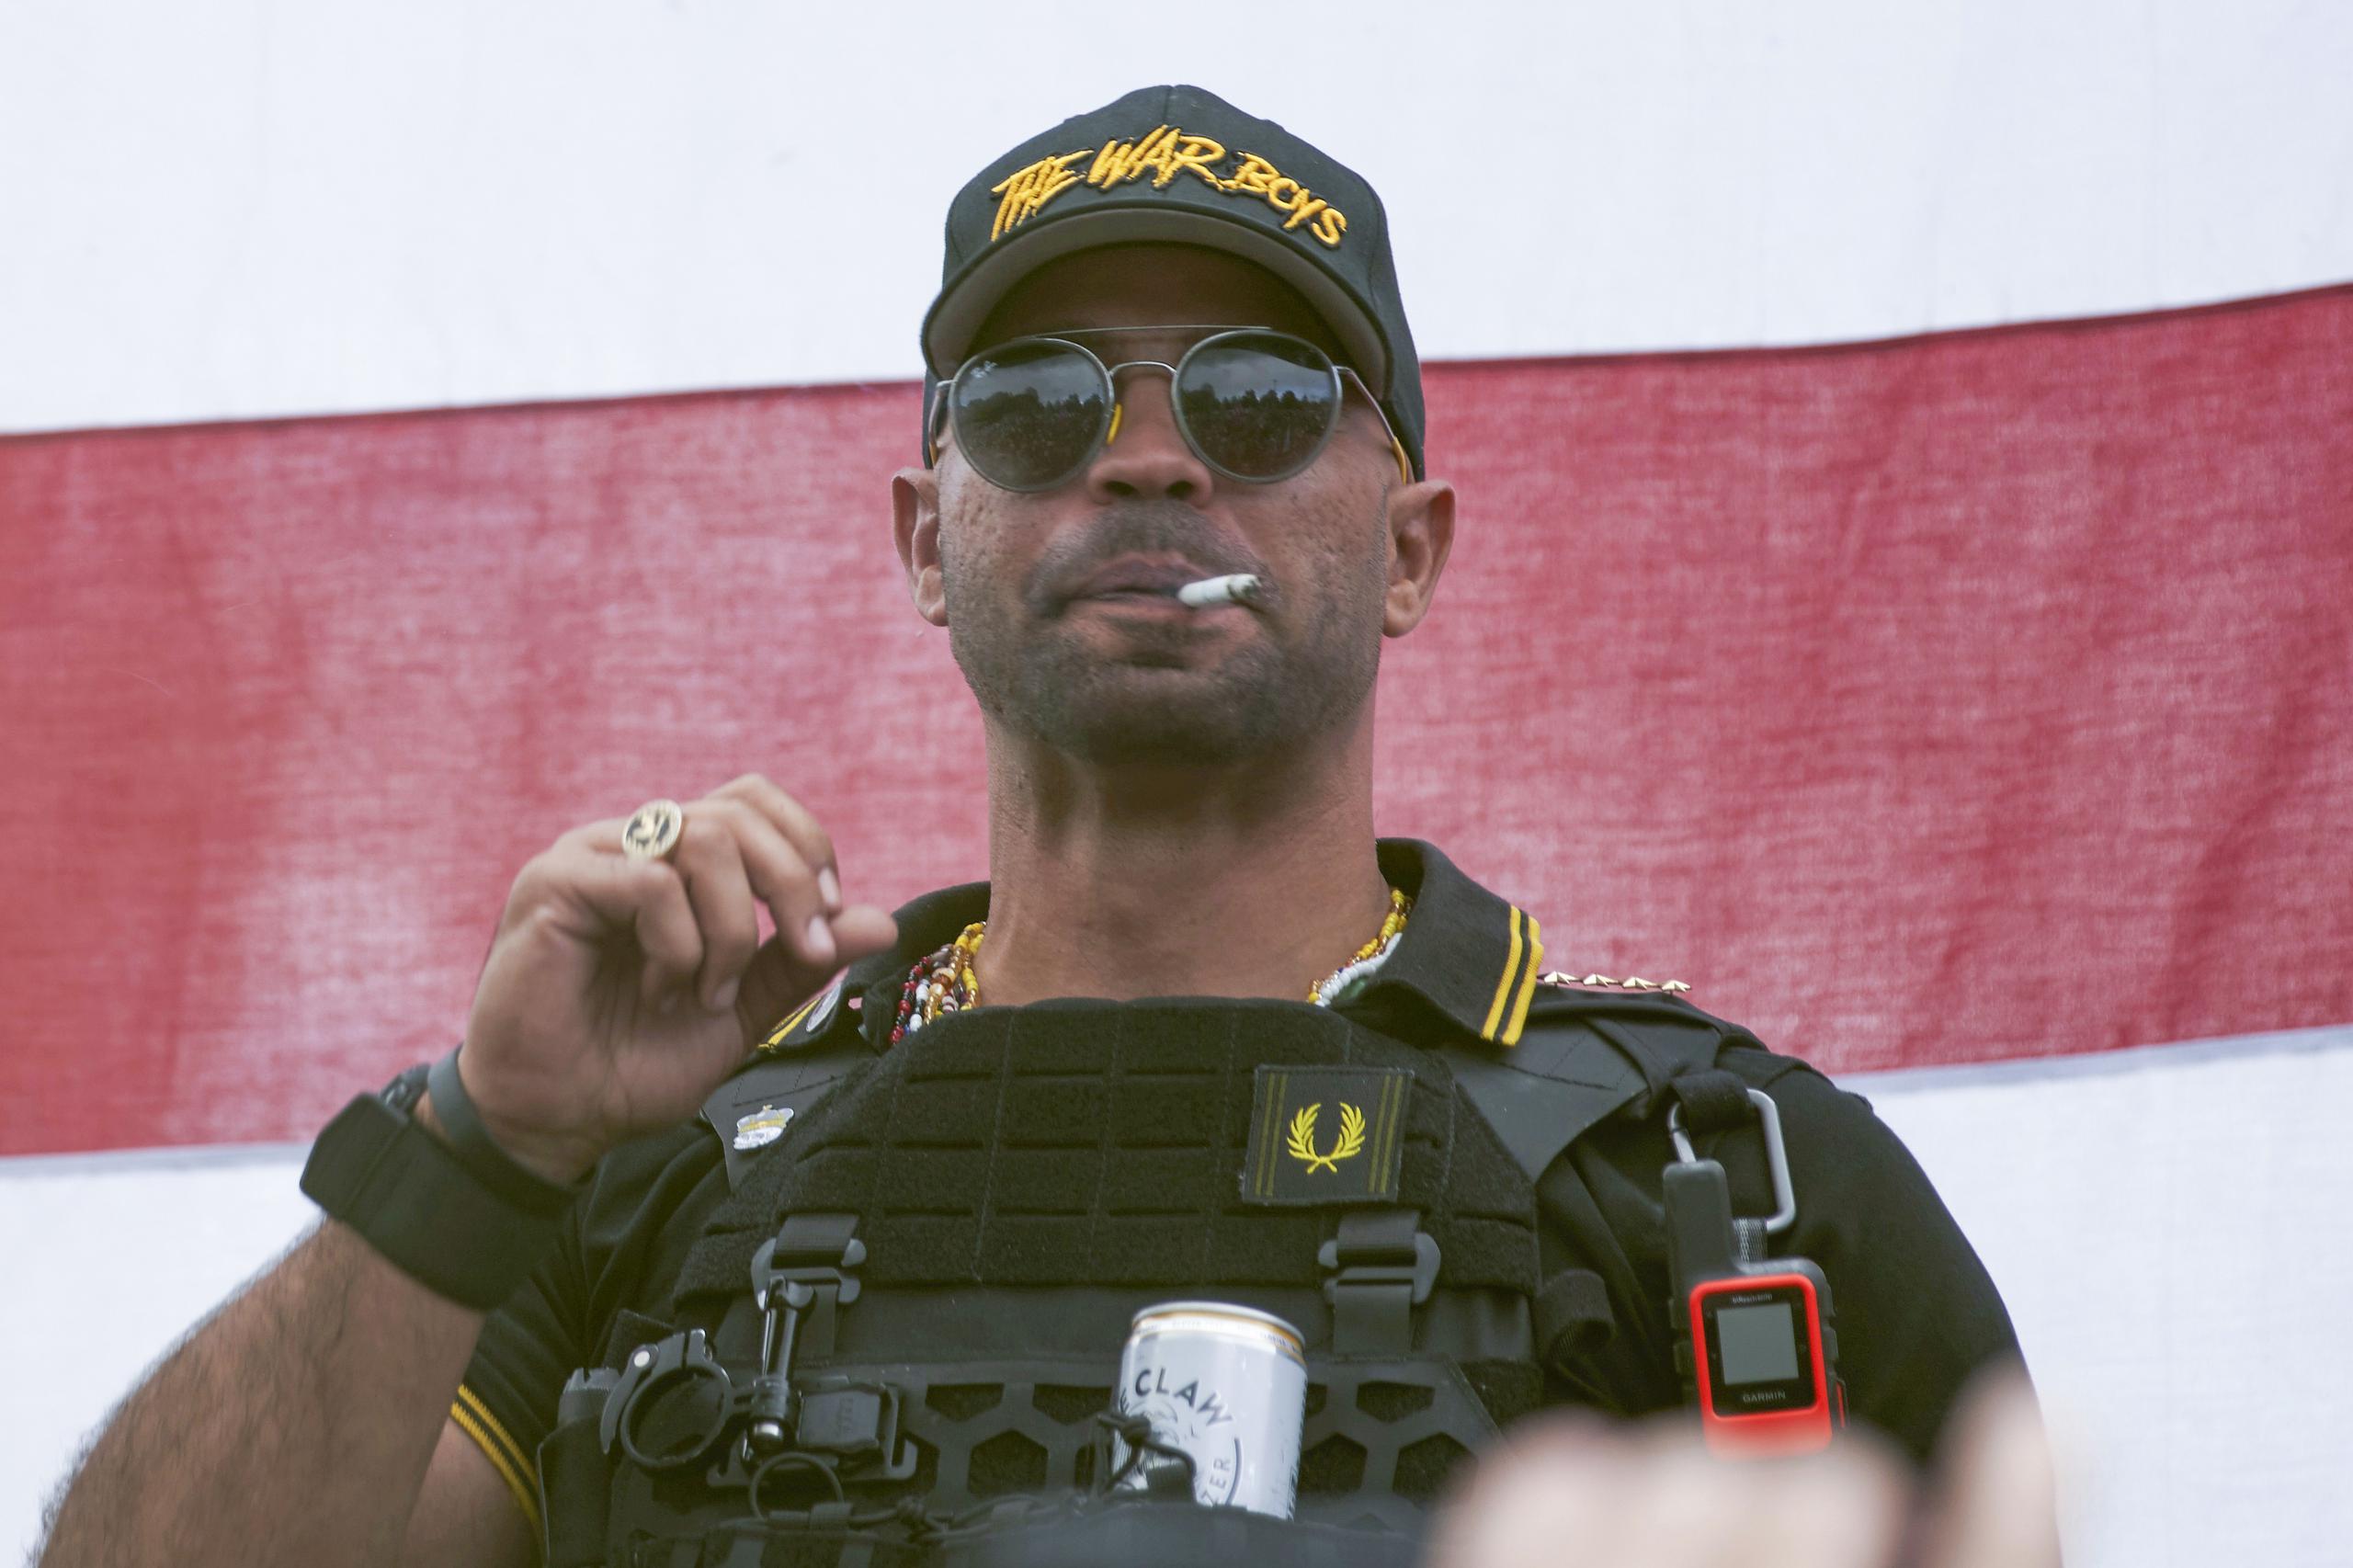 El líder del grupo extremista Proud Boys, Enrique Tarrio, en un mitin en Portland, Oregon, el 26 de septiembre de 2020. Tarrio es uno de los acusados del asalto al Capitolio en enero de 2021. (AP Foto/Allison Dinner, File)